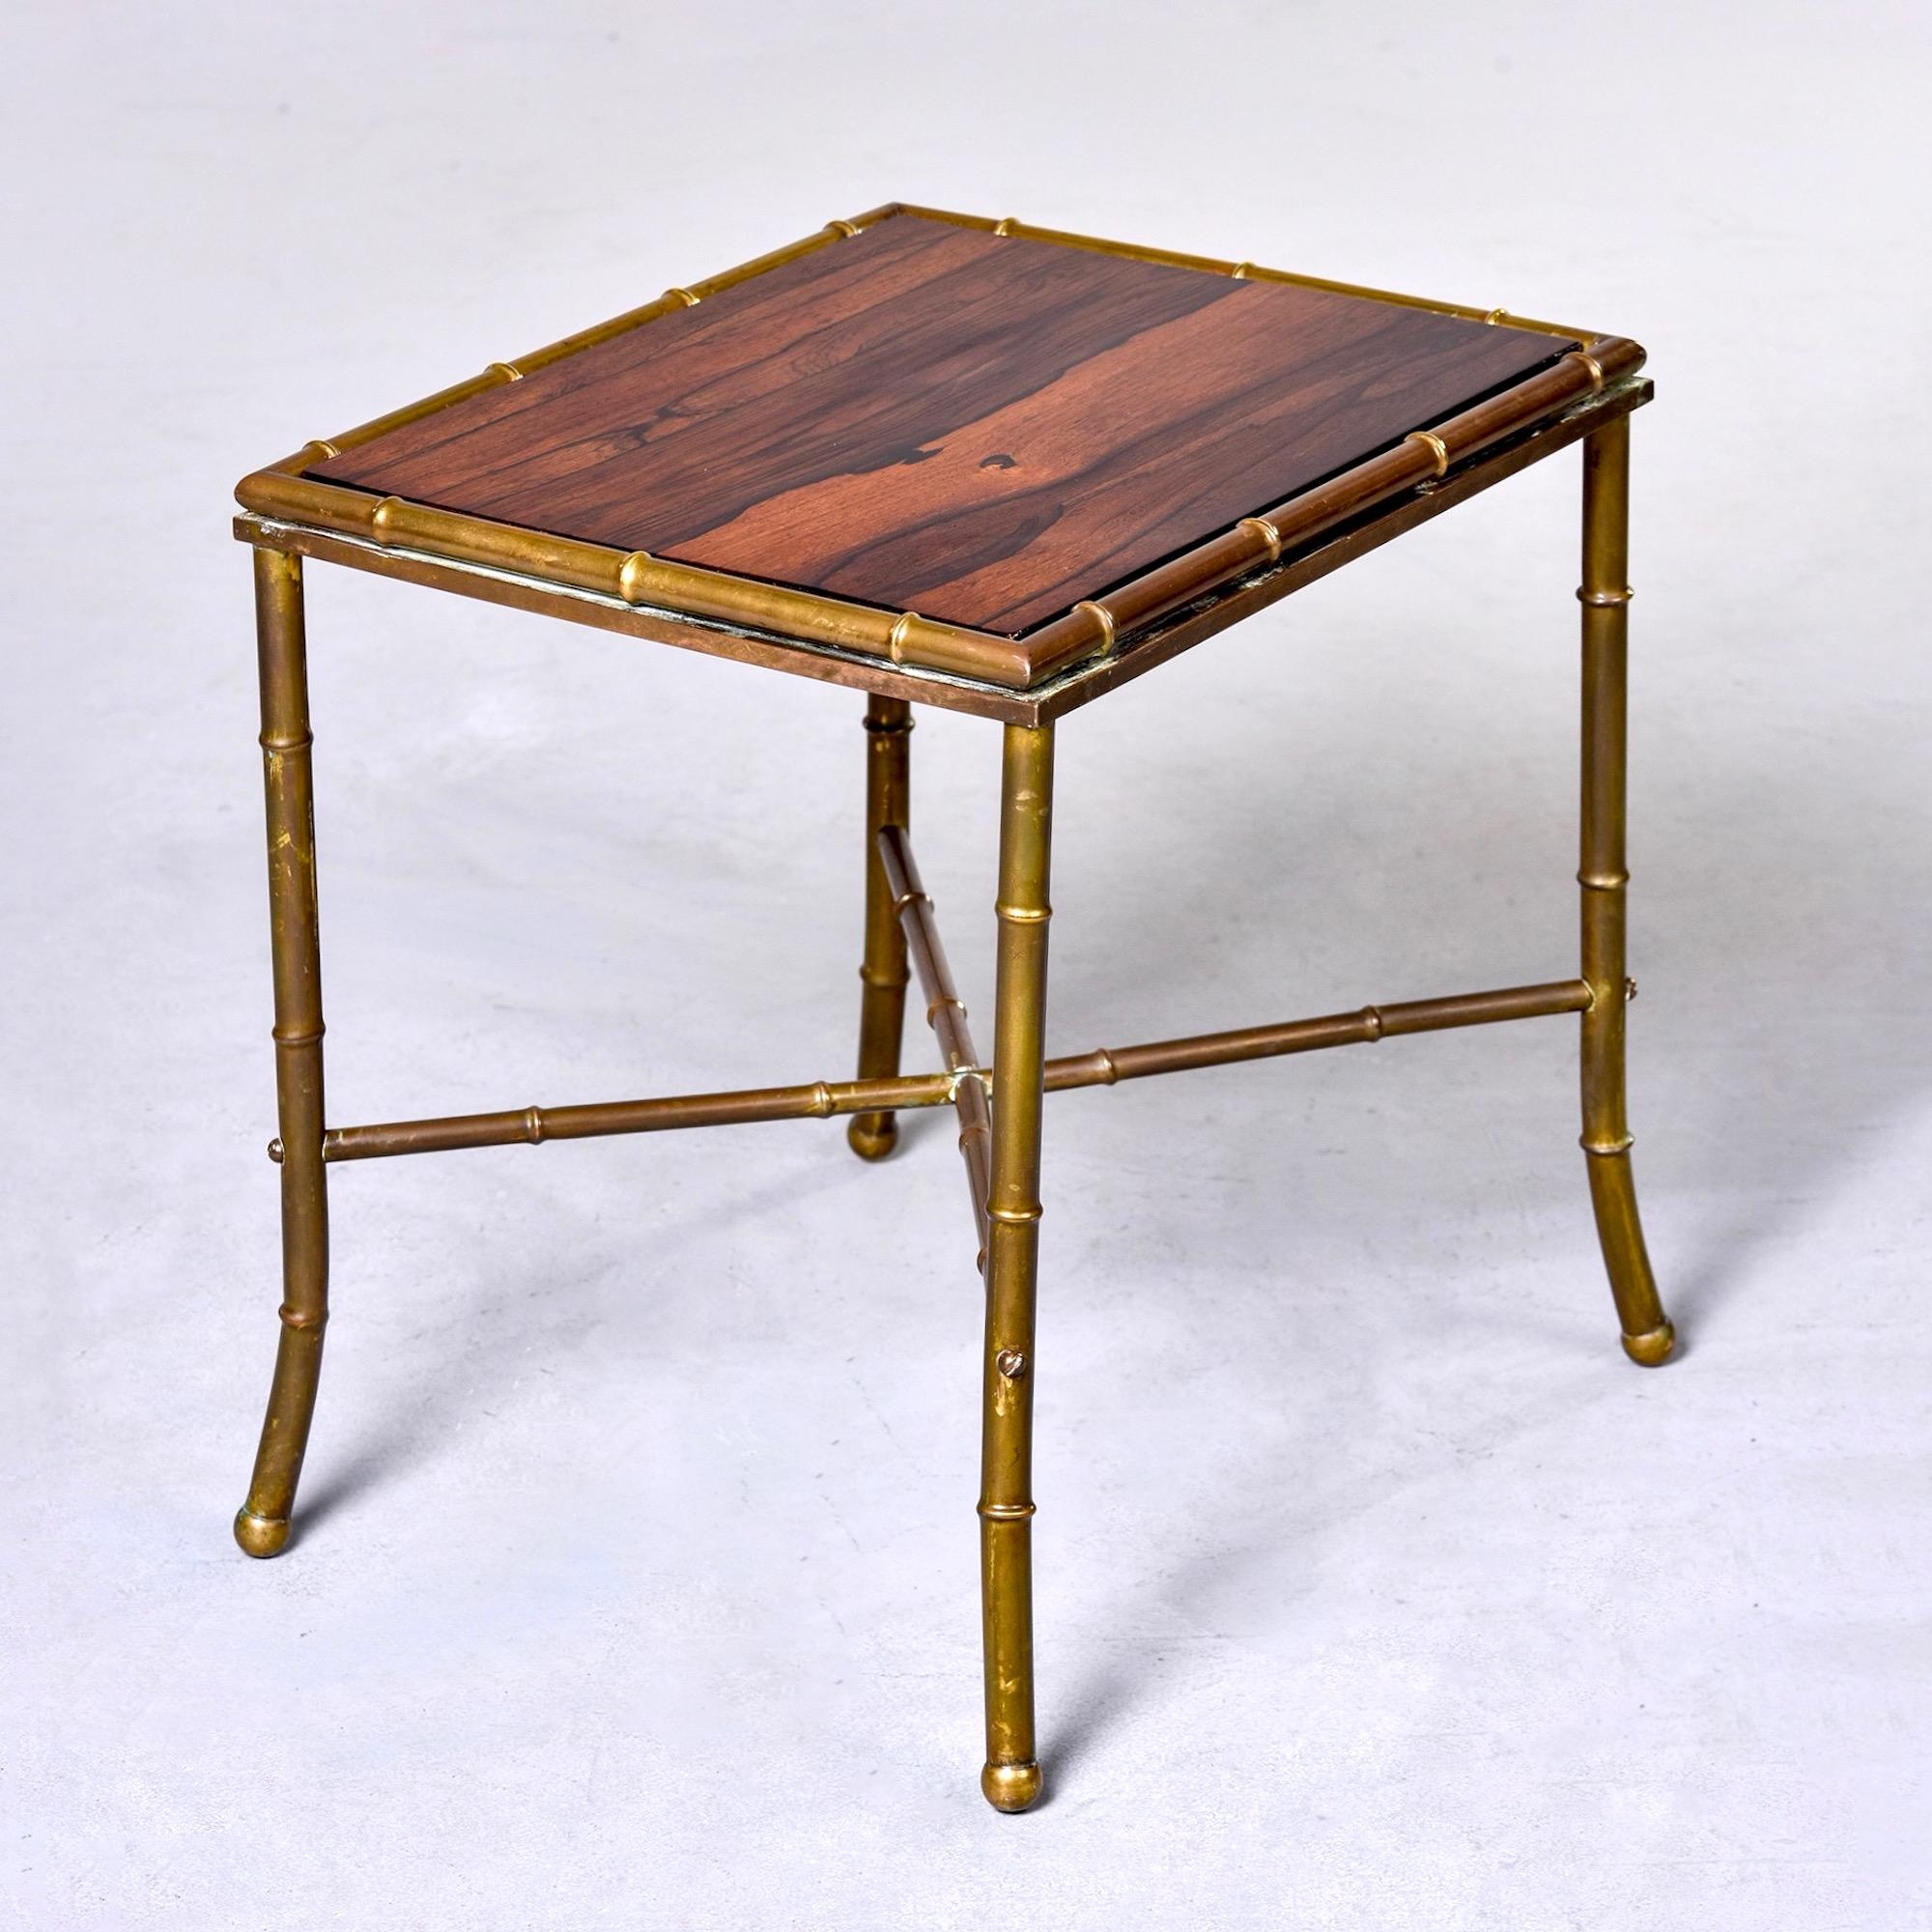 Trouvée en Italie, cette table d'appoint datant des années 1970 a un cadre en laiton imitation bambou et un plateau en bois. Brancard en forme de X. Fabricant inconnu.